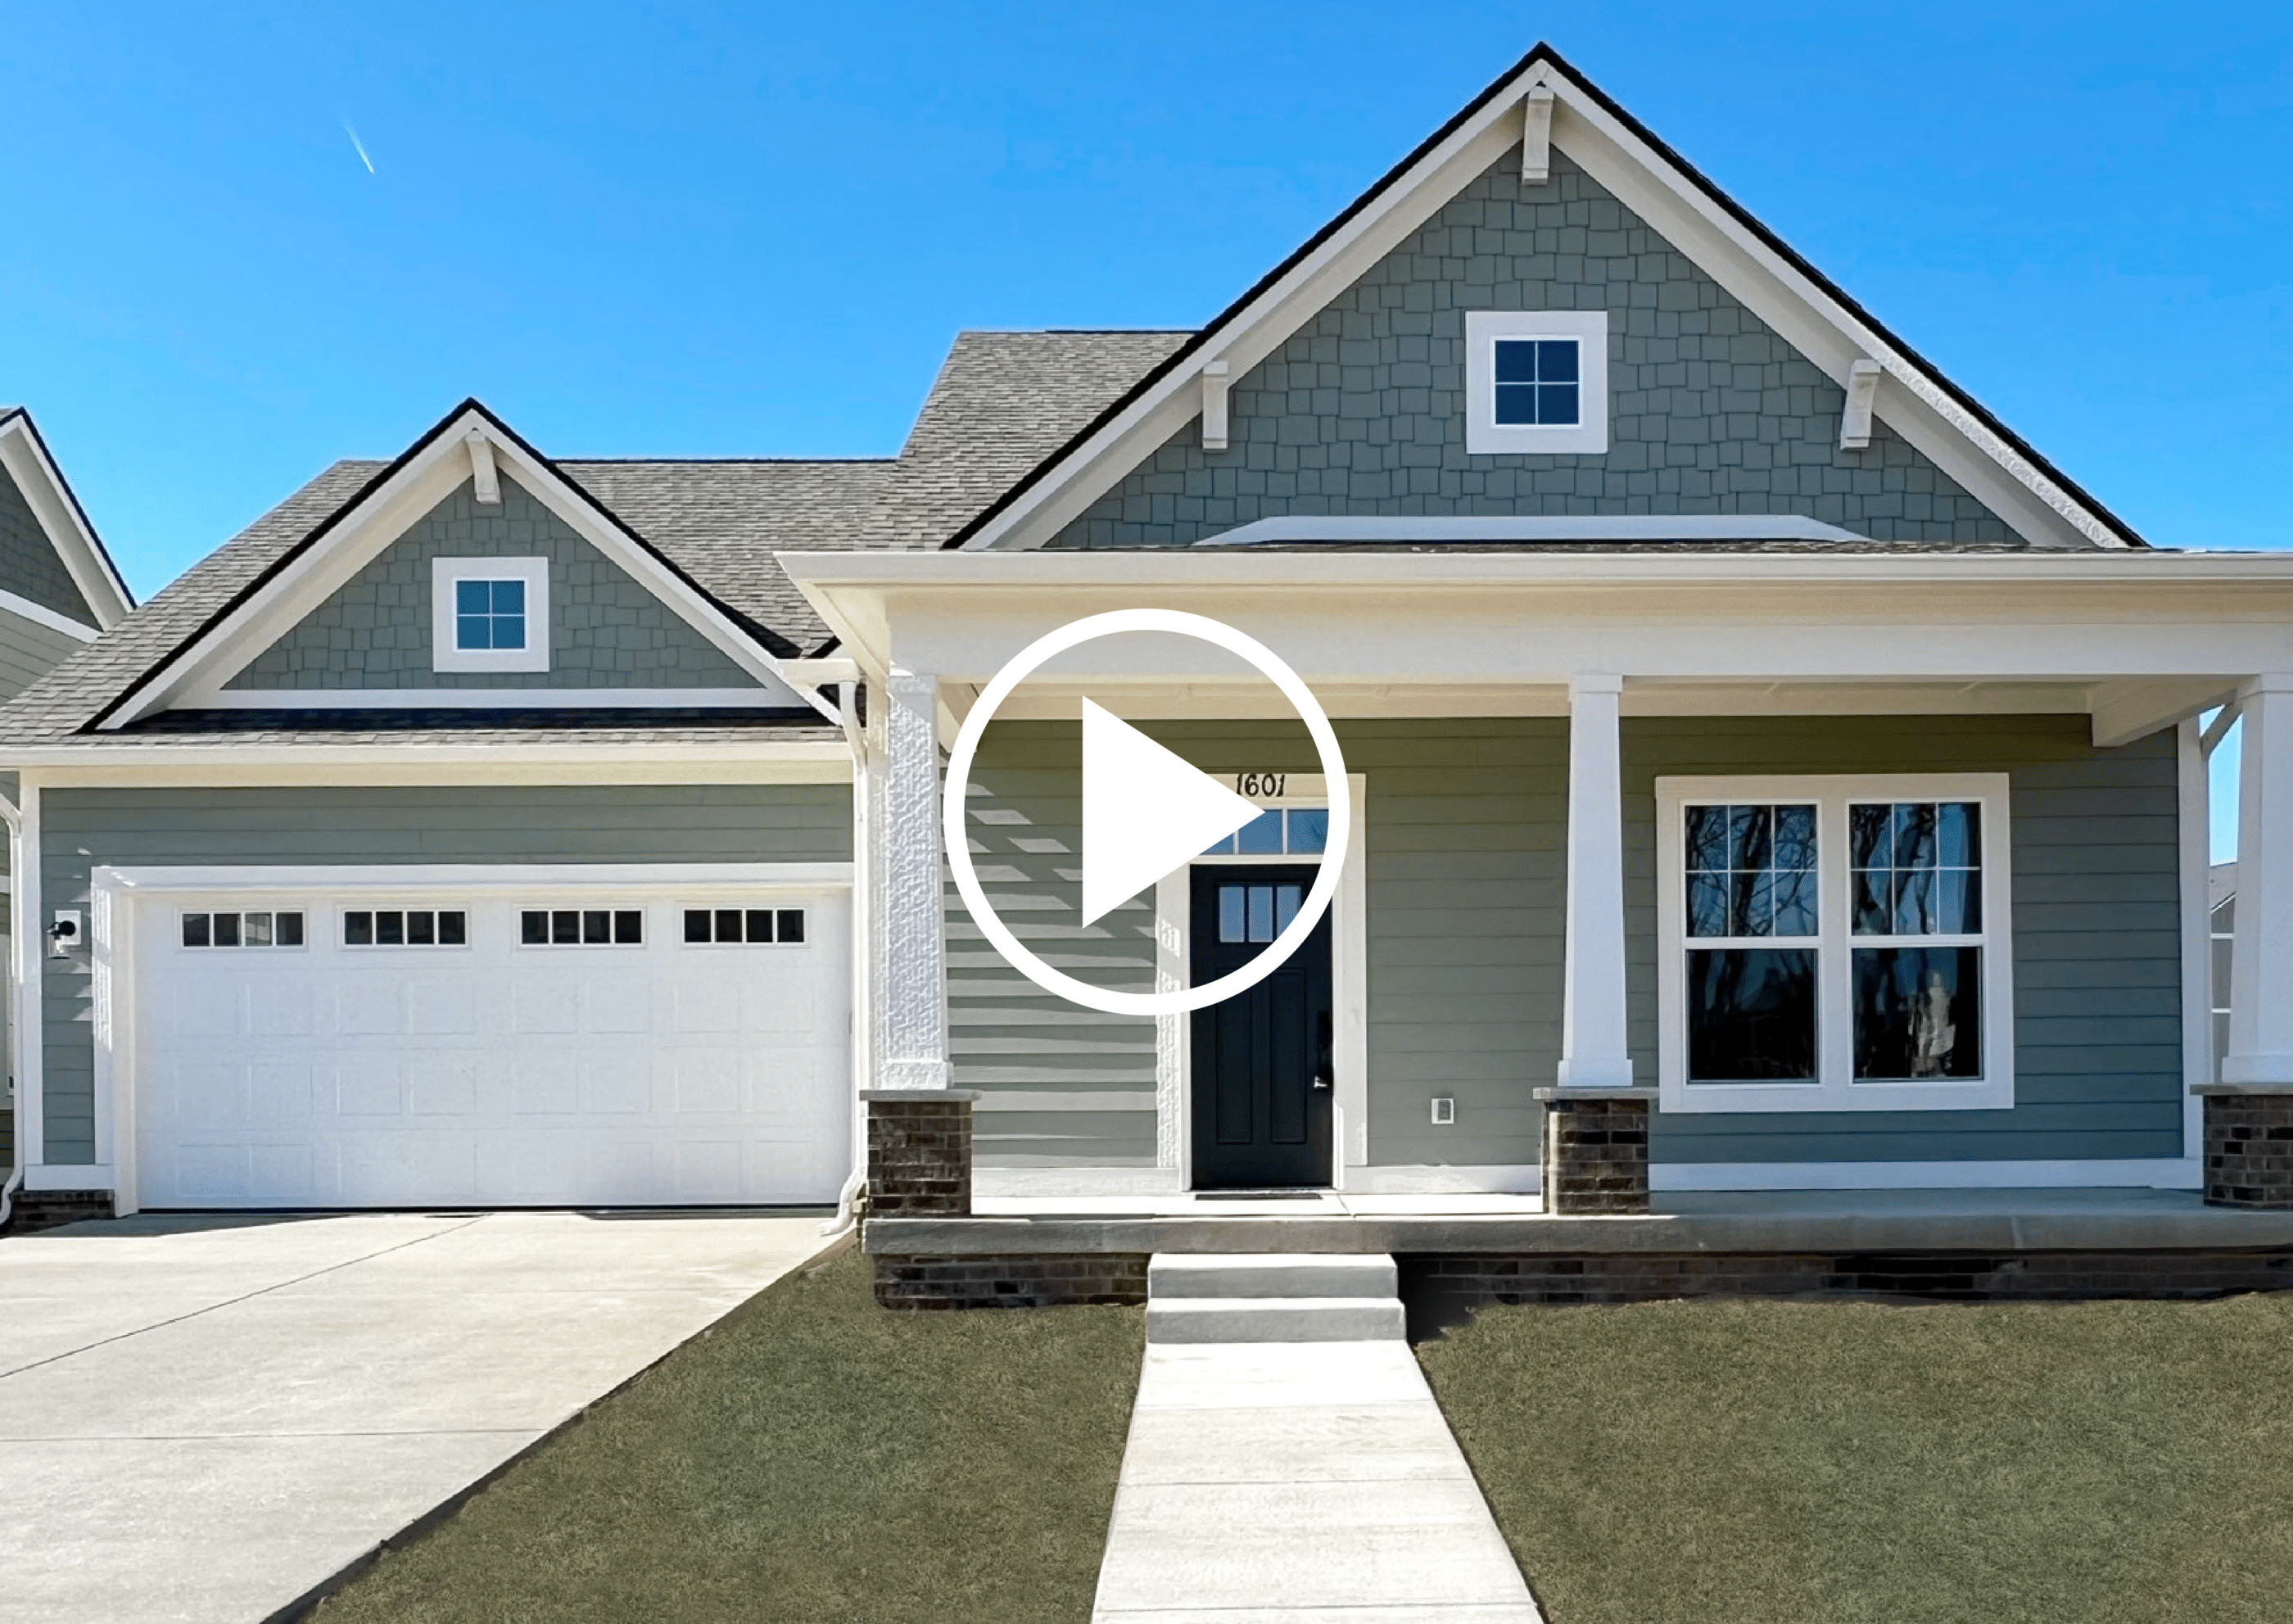 A virtual tour showcasing the exterior of a custom home.